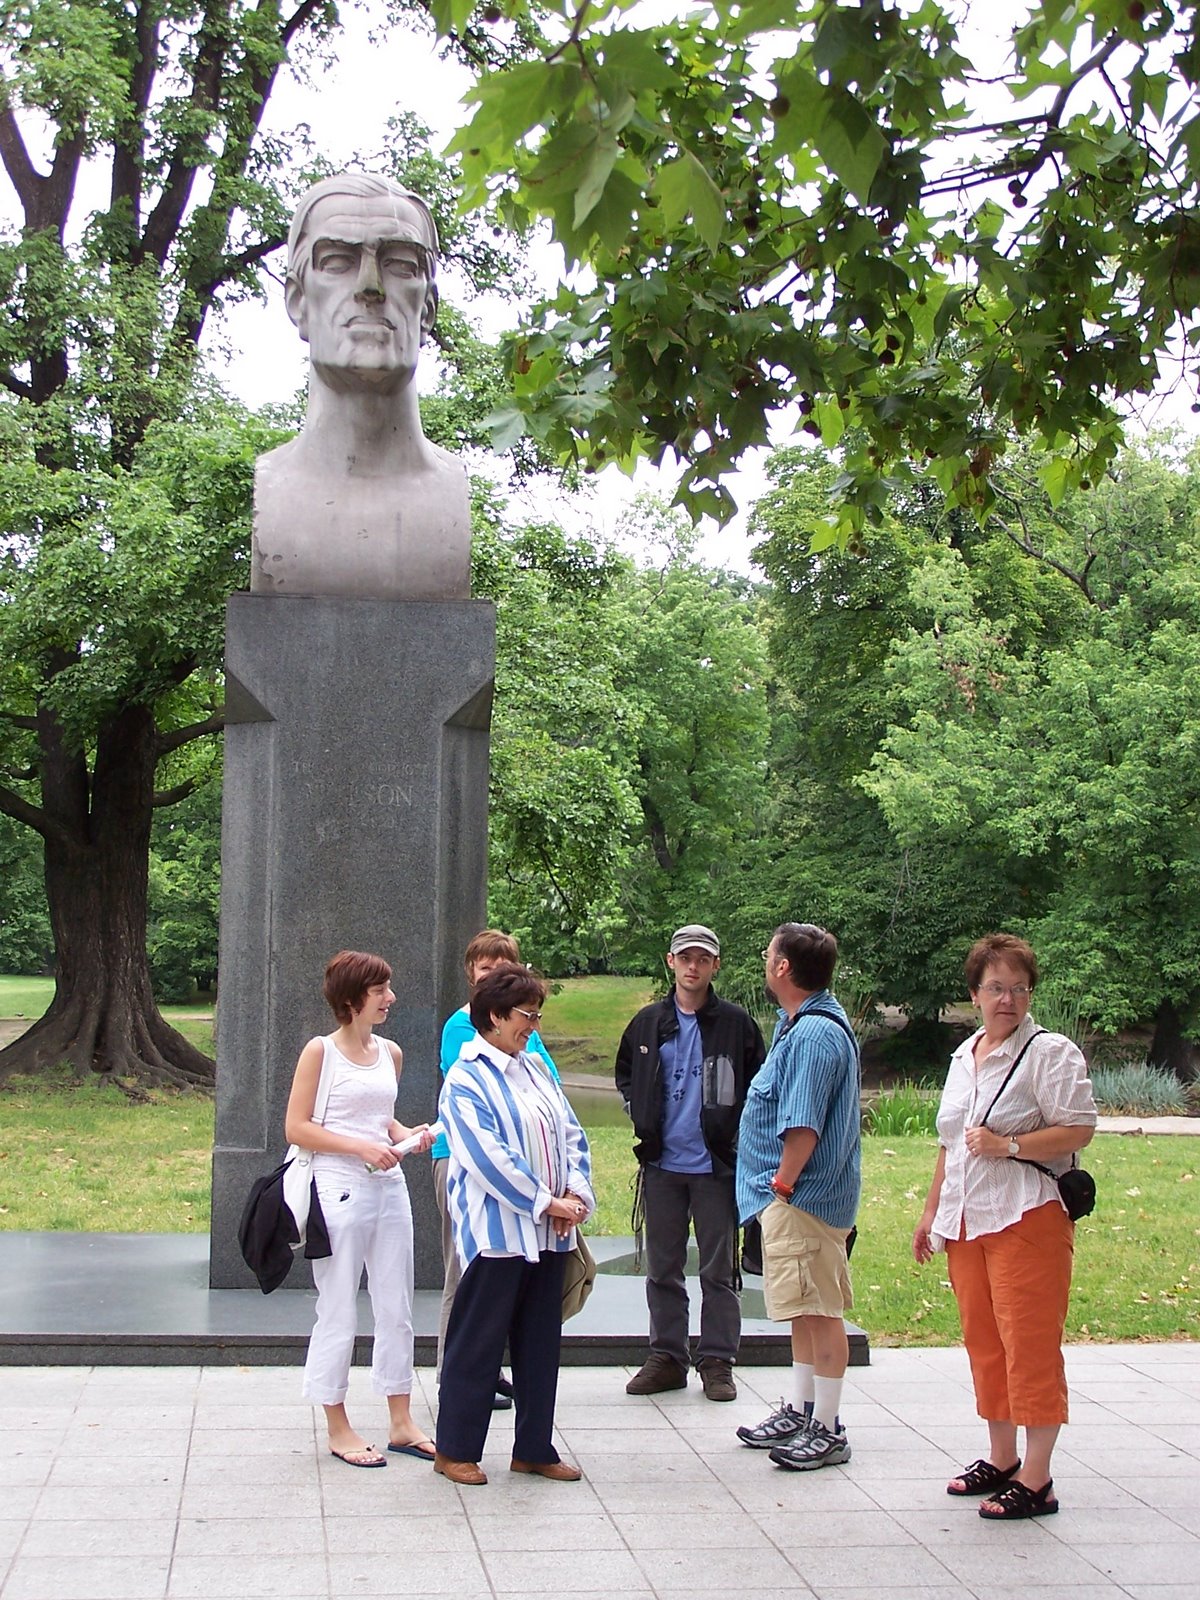 [Woodrow+Wilson+monument+in+park.JPG]